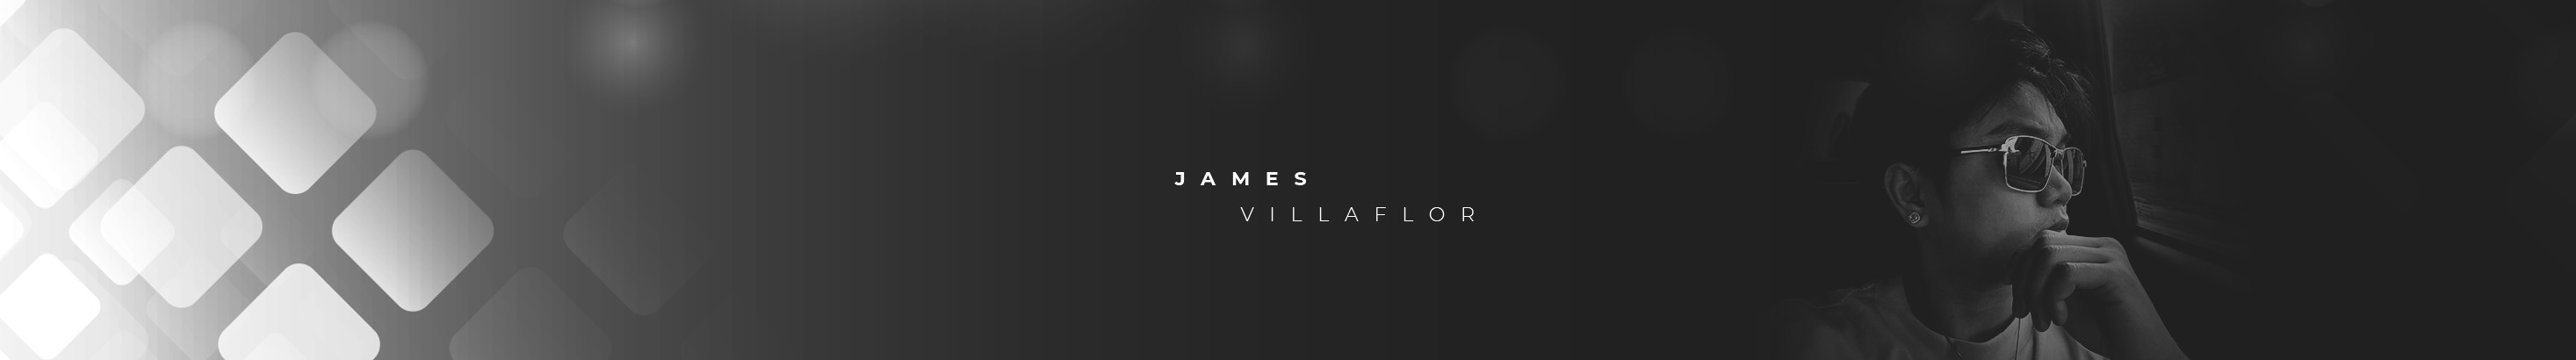 James Villaflor's profile banner